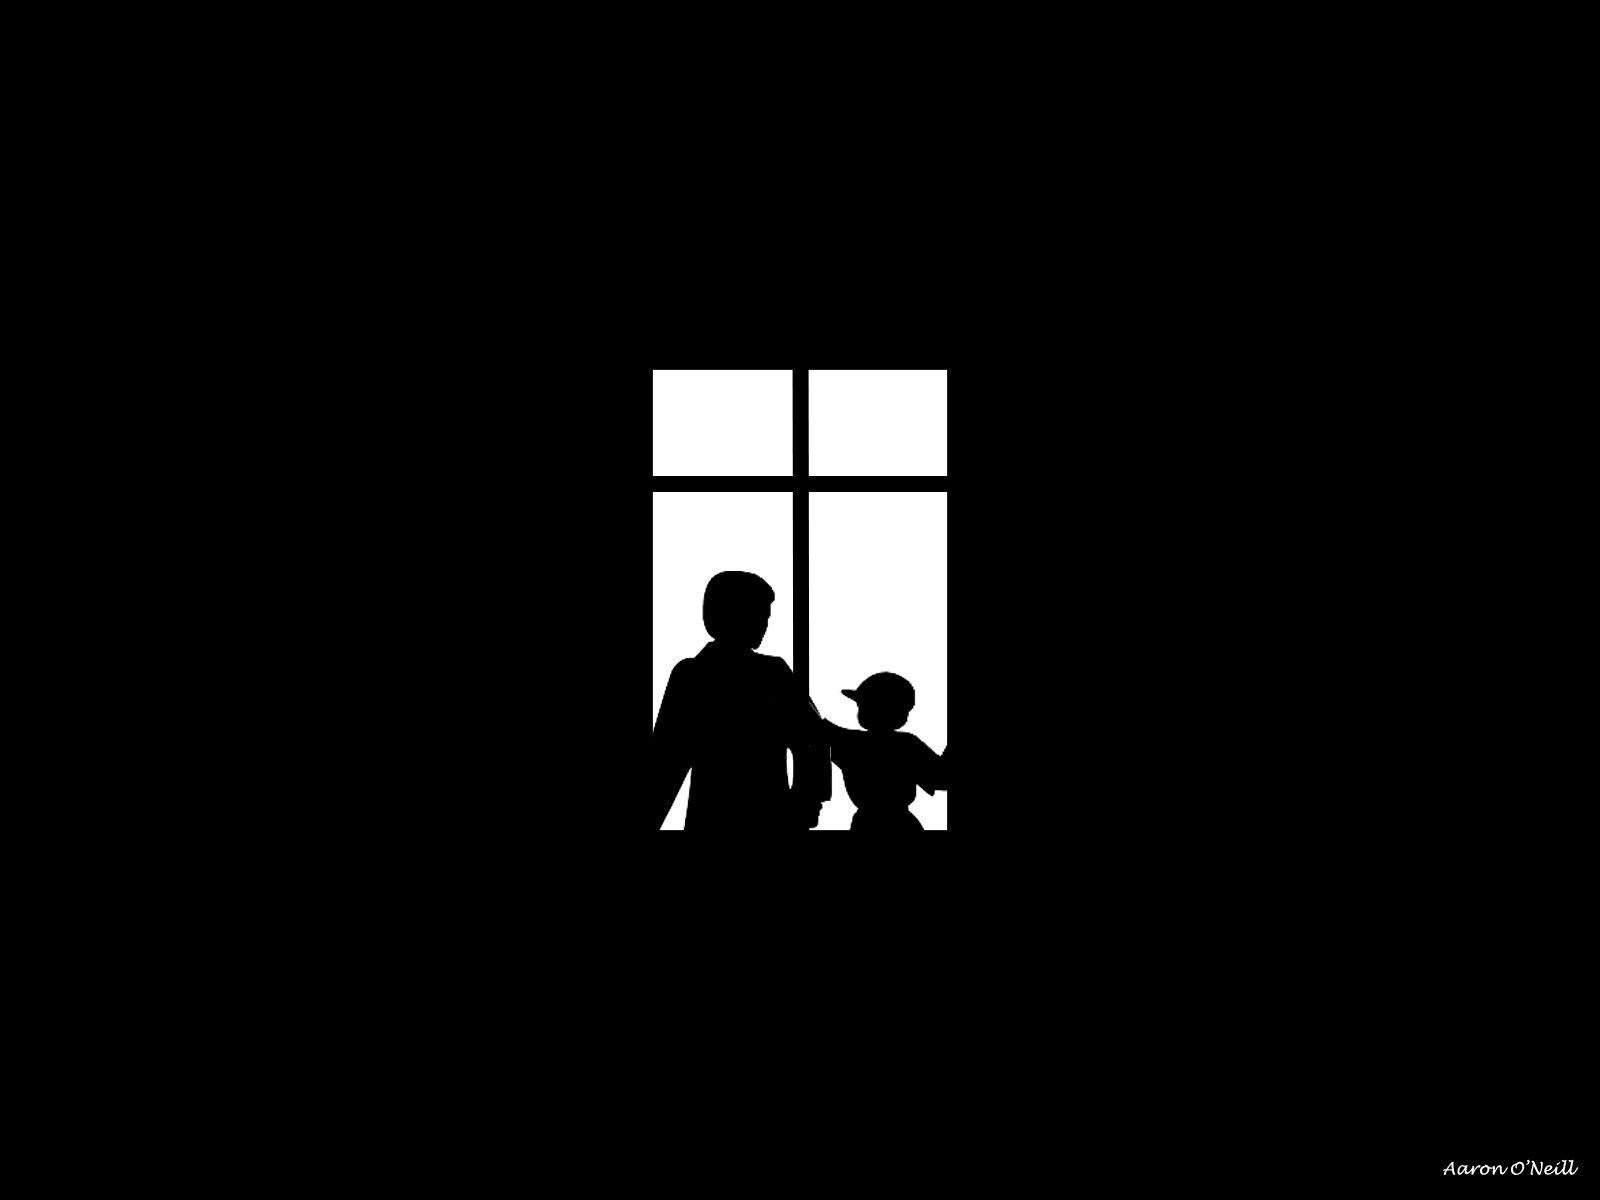 دانلود تصویر جالب سیاه و سفید پدر و پسری با کیفیت خوب  